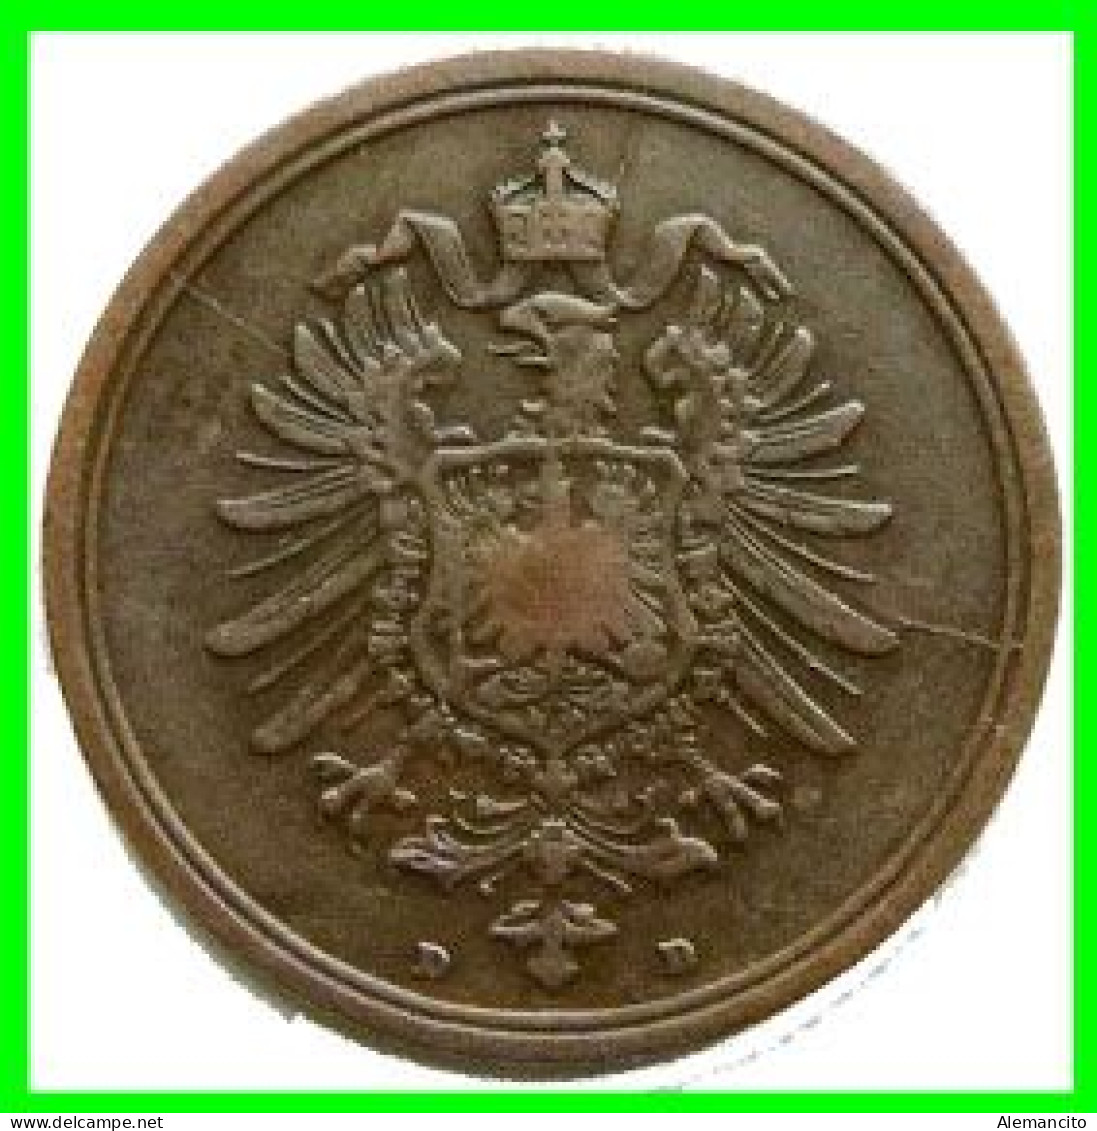 ALEMANIA – GERMANY - IMPERIO MONEDA DE COBRE DIAMETRO 17.5 Mm. DEL AÑO 1875 – CECA-D- KM-1  GOBERNANTE: GUILLERMO I - 1 Pfennig